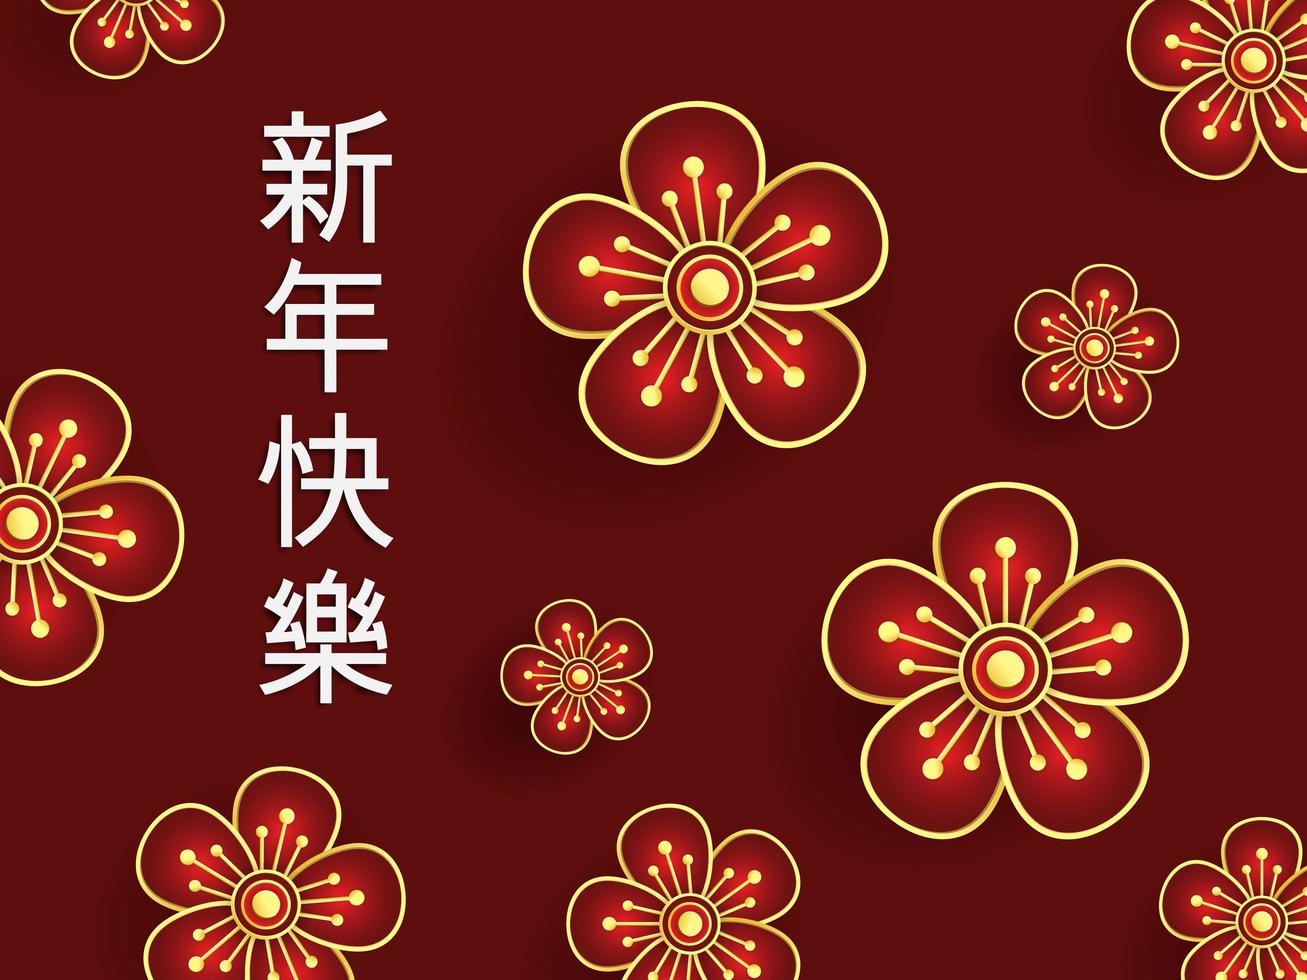 illustrazione di fiori rossi con calligrafia cinese su sfondo rosso vettore